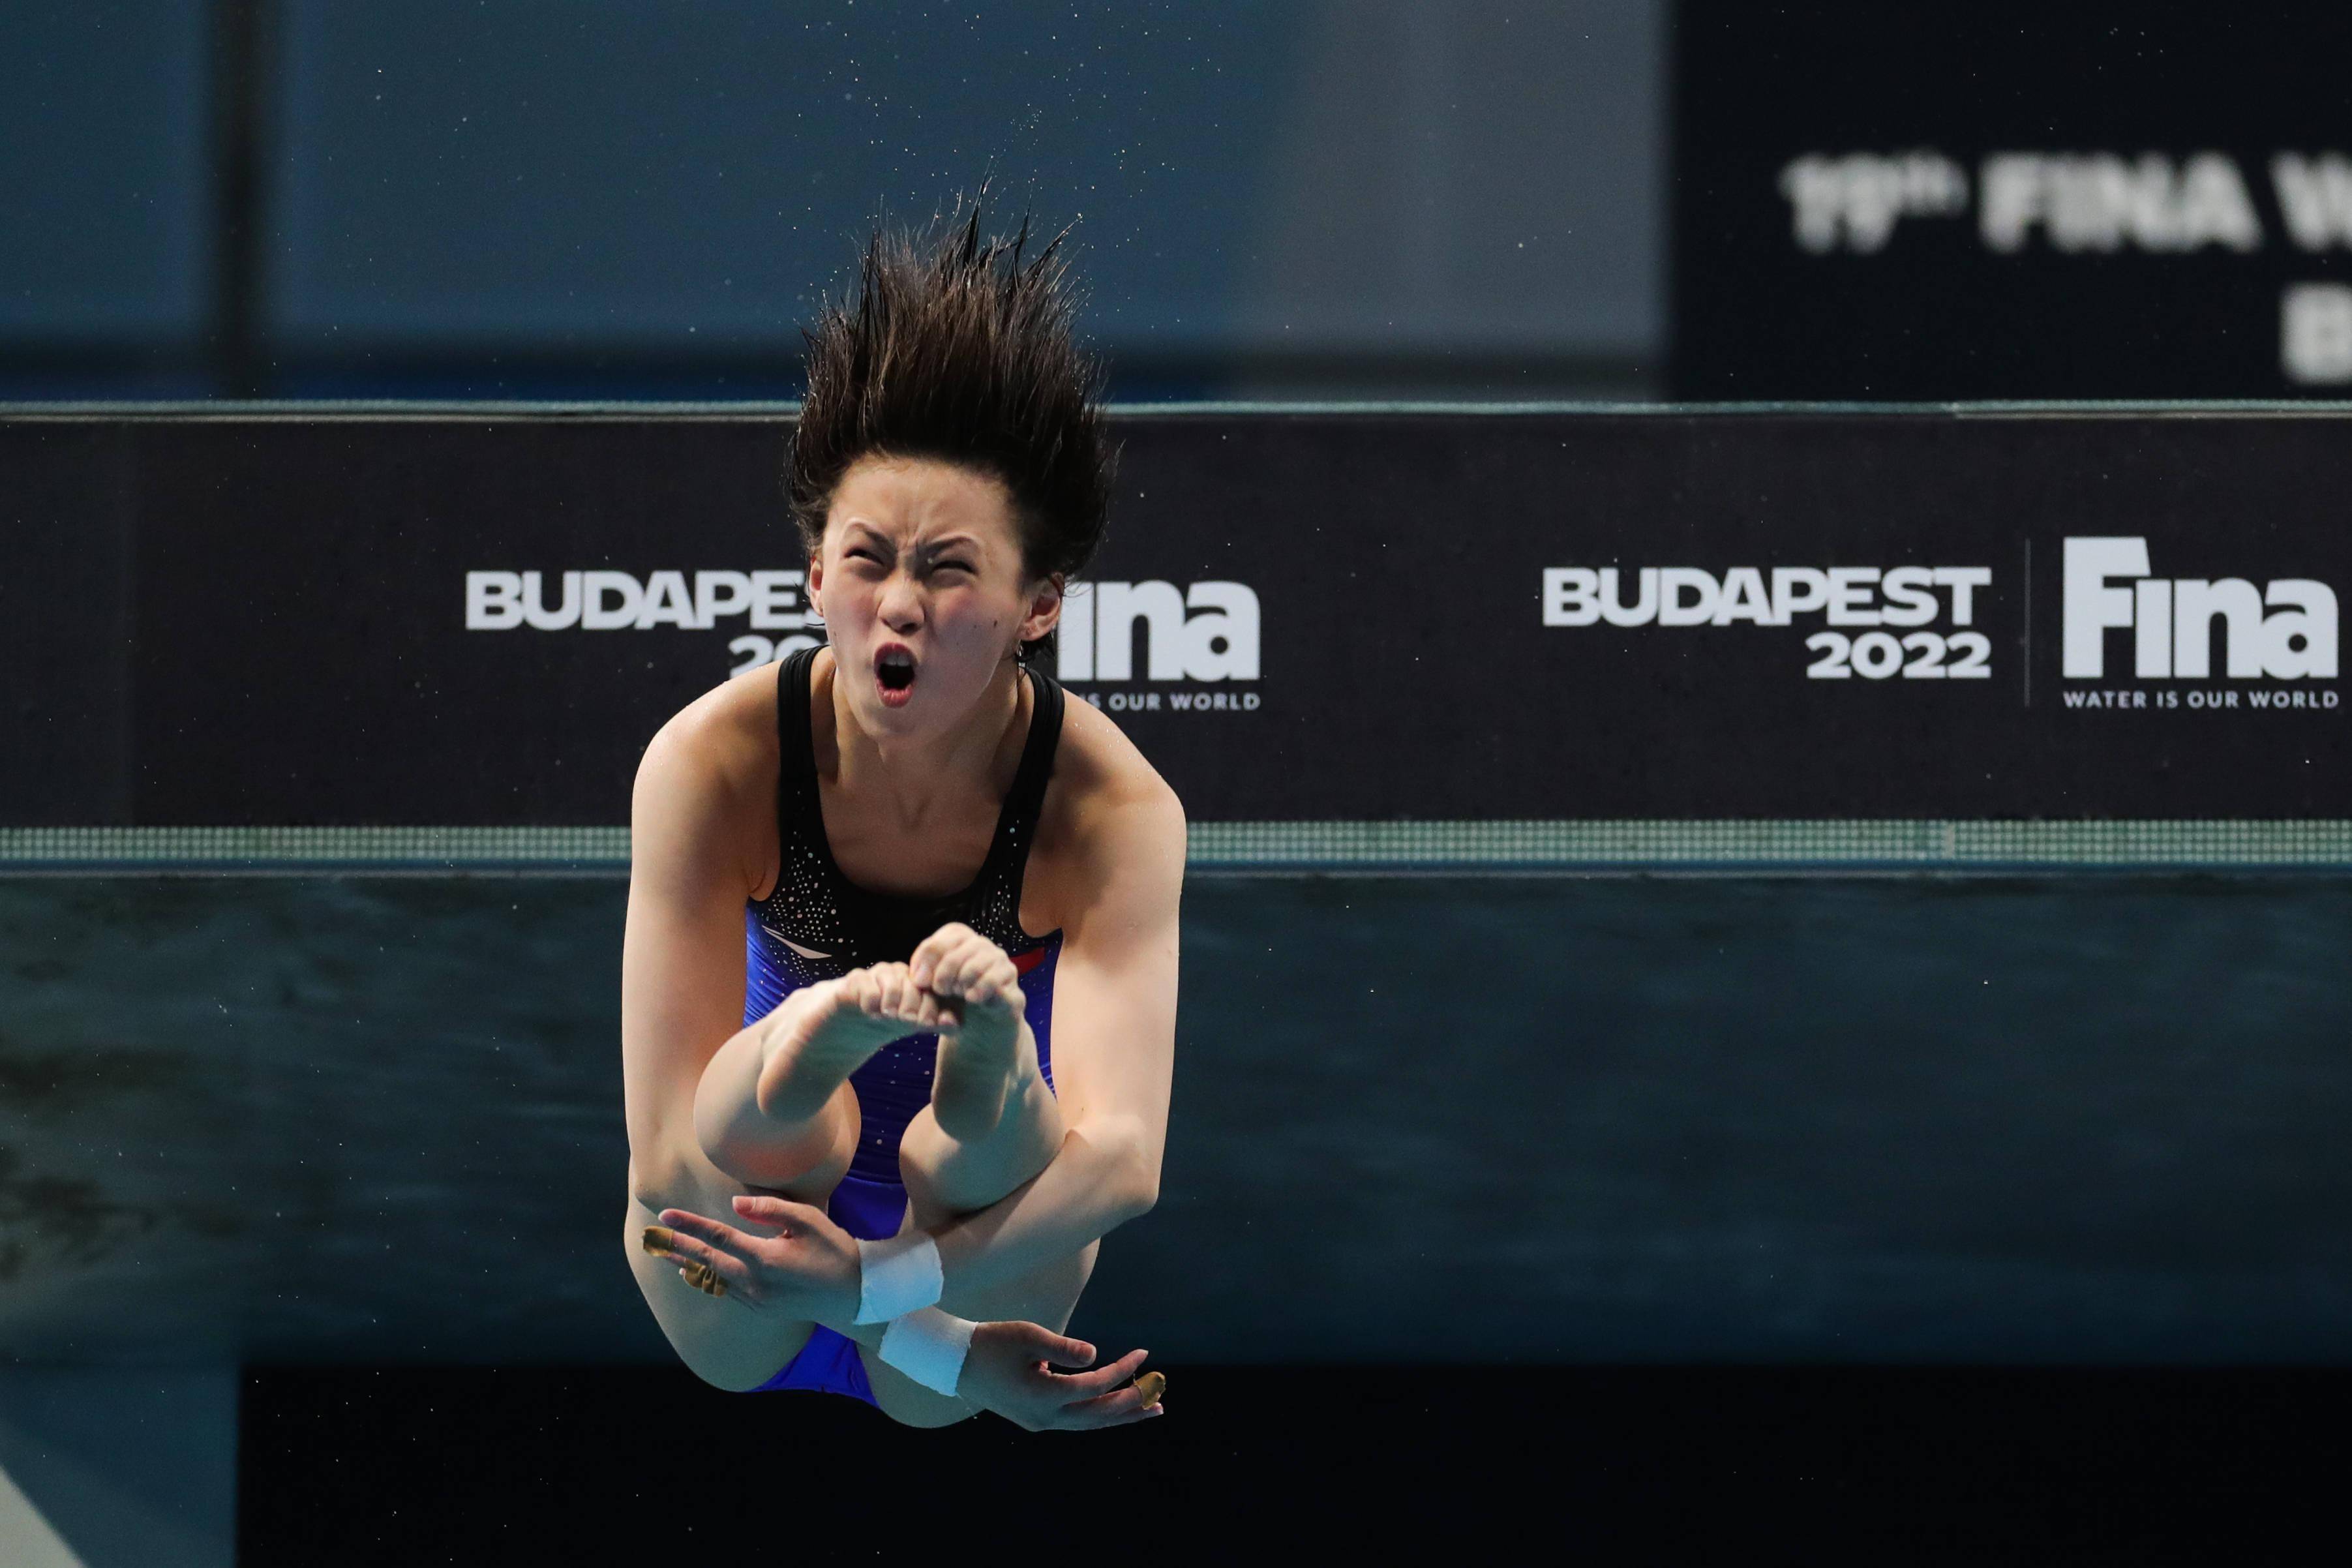 年世界游泳锦标赛跳水项目女子十米台决赛中,中国选手陈芋汐获得冠军